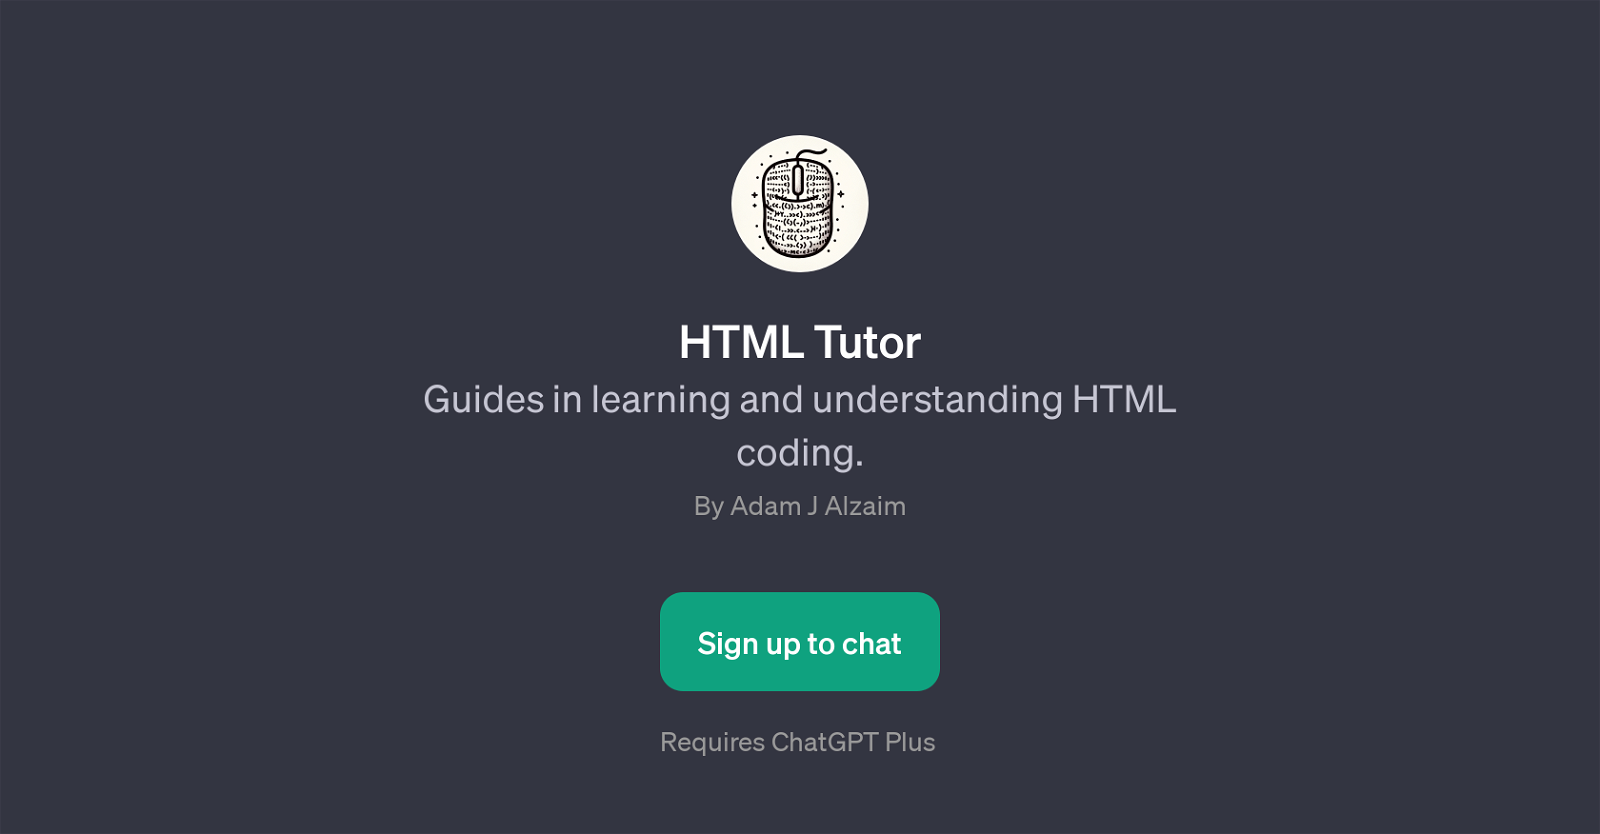 HTML Tutor website